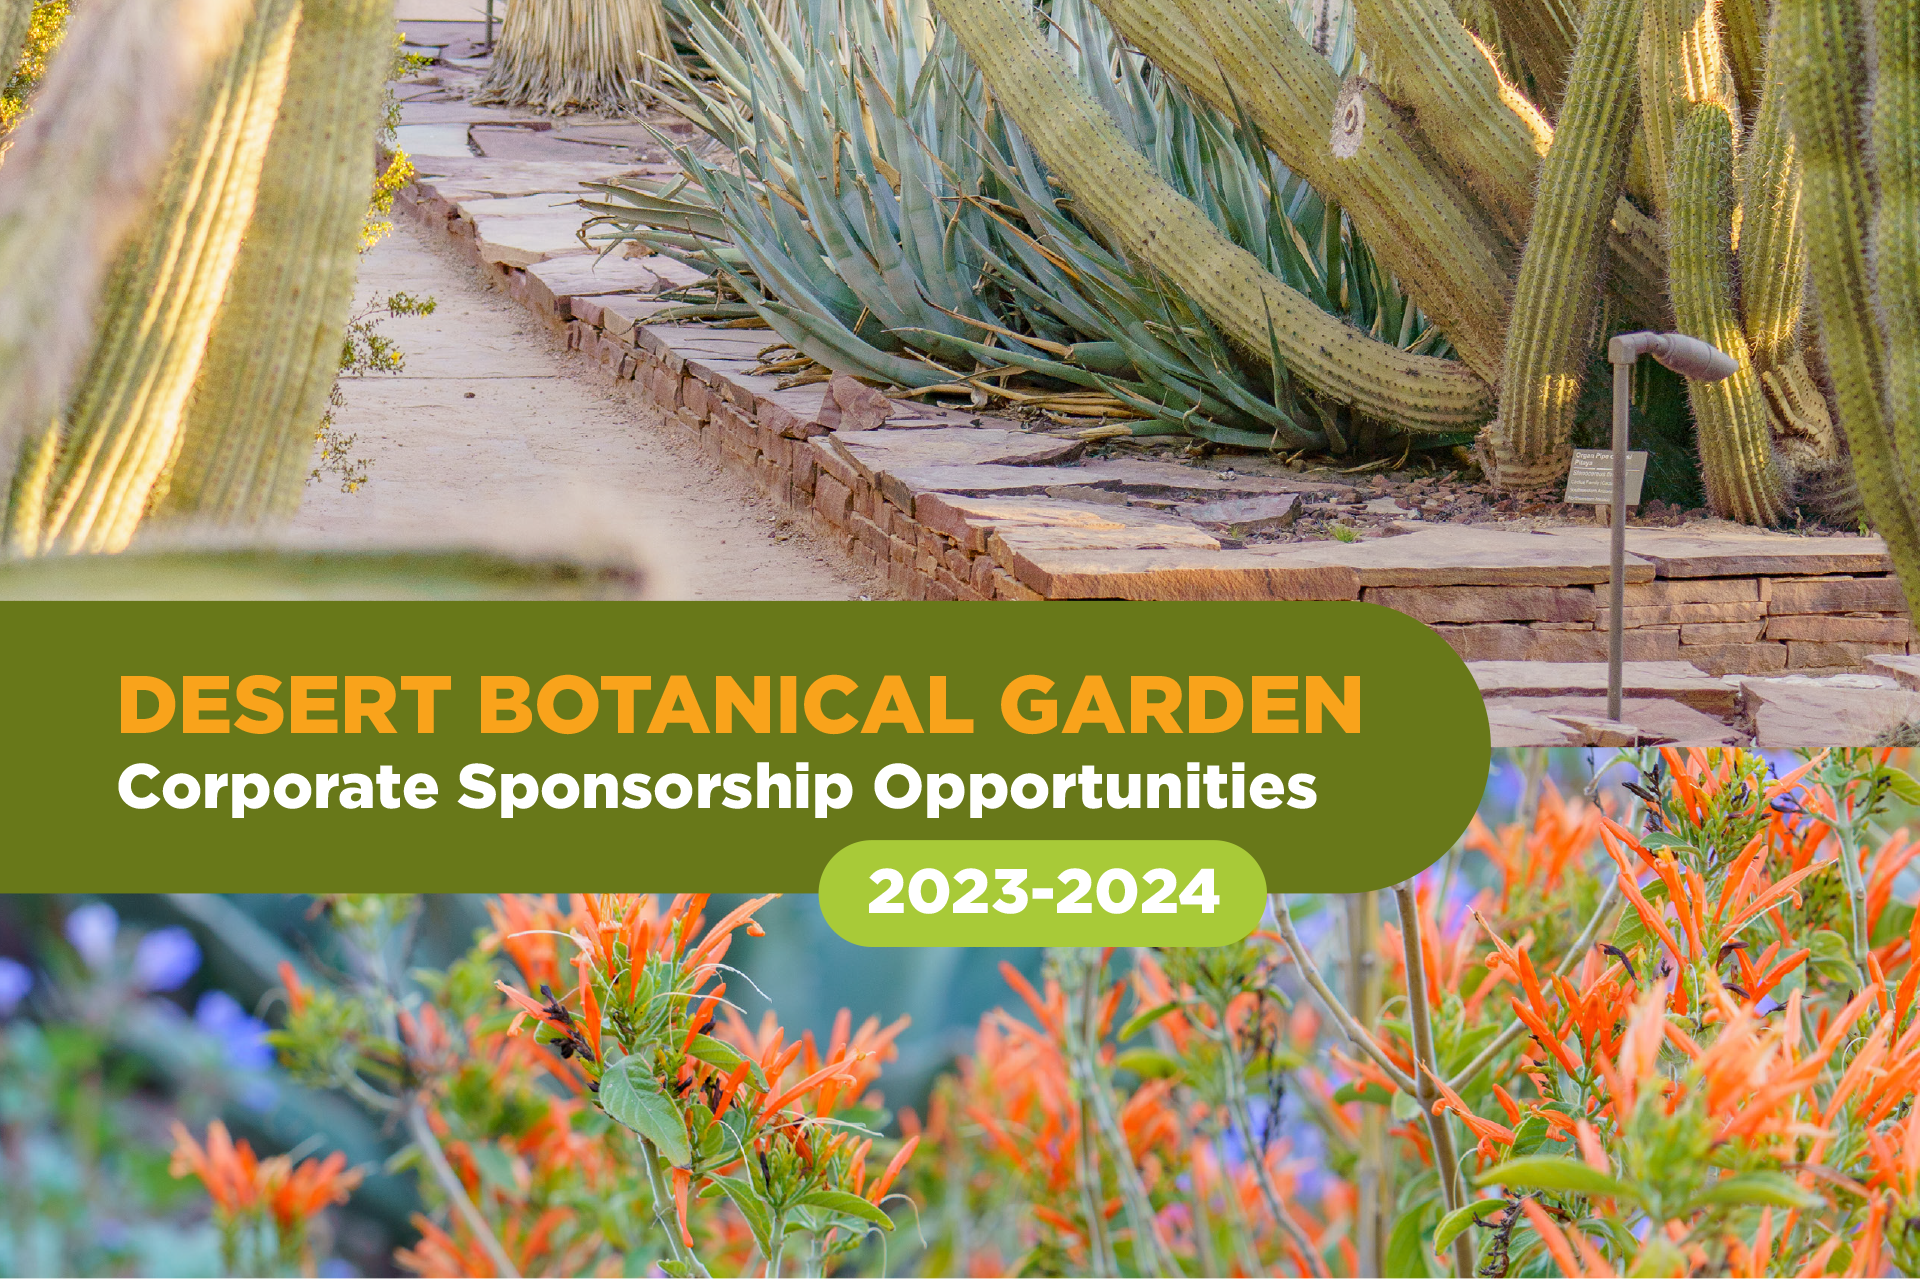 Sponsorship of Desert Botanical Garden